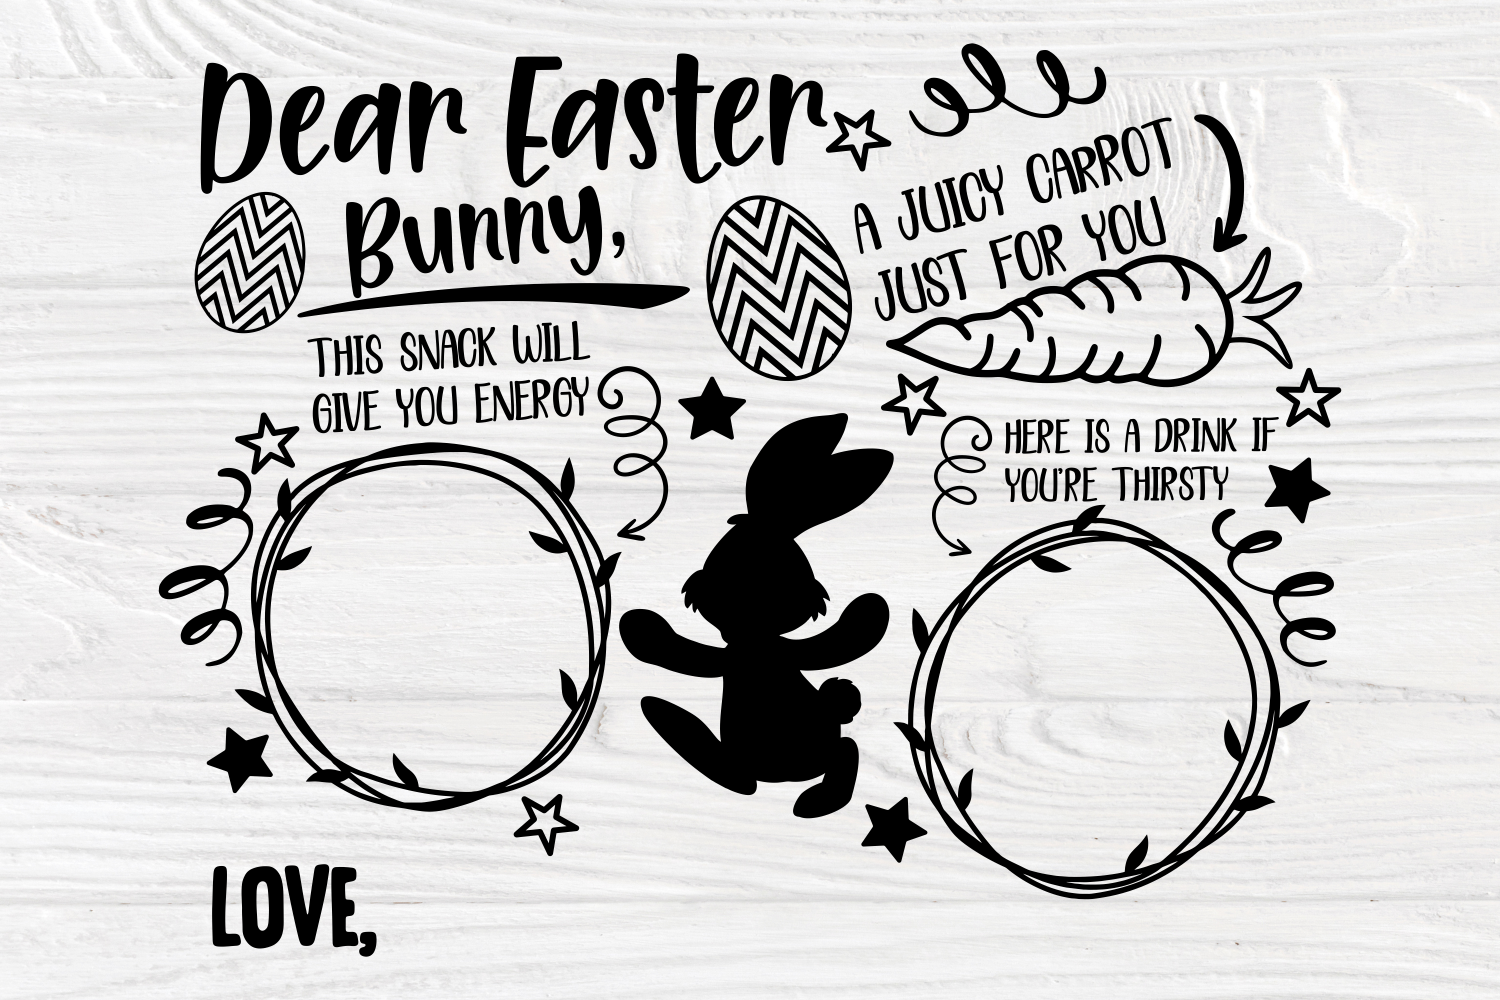 Easter Tray SVG Bundle, Dear Easter Bunny Svg By TonisArtStudio